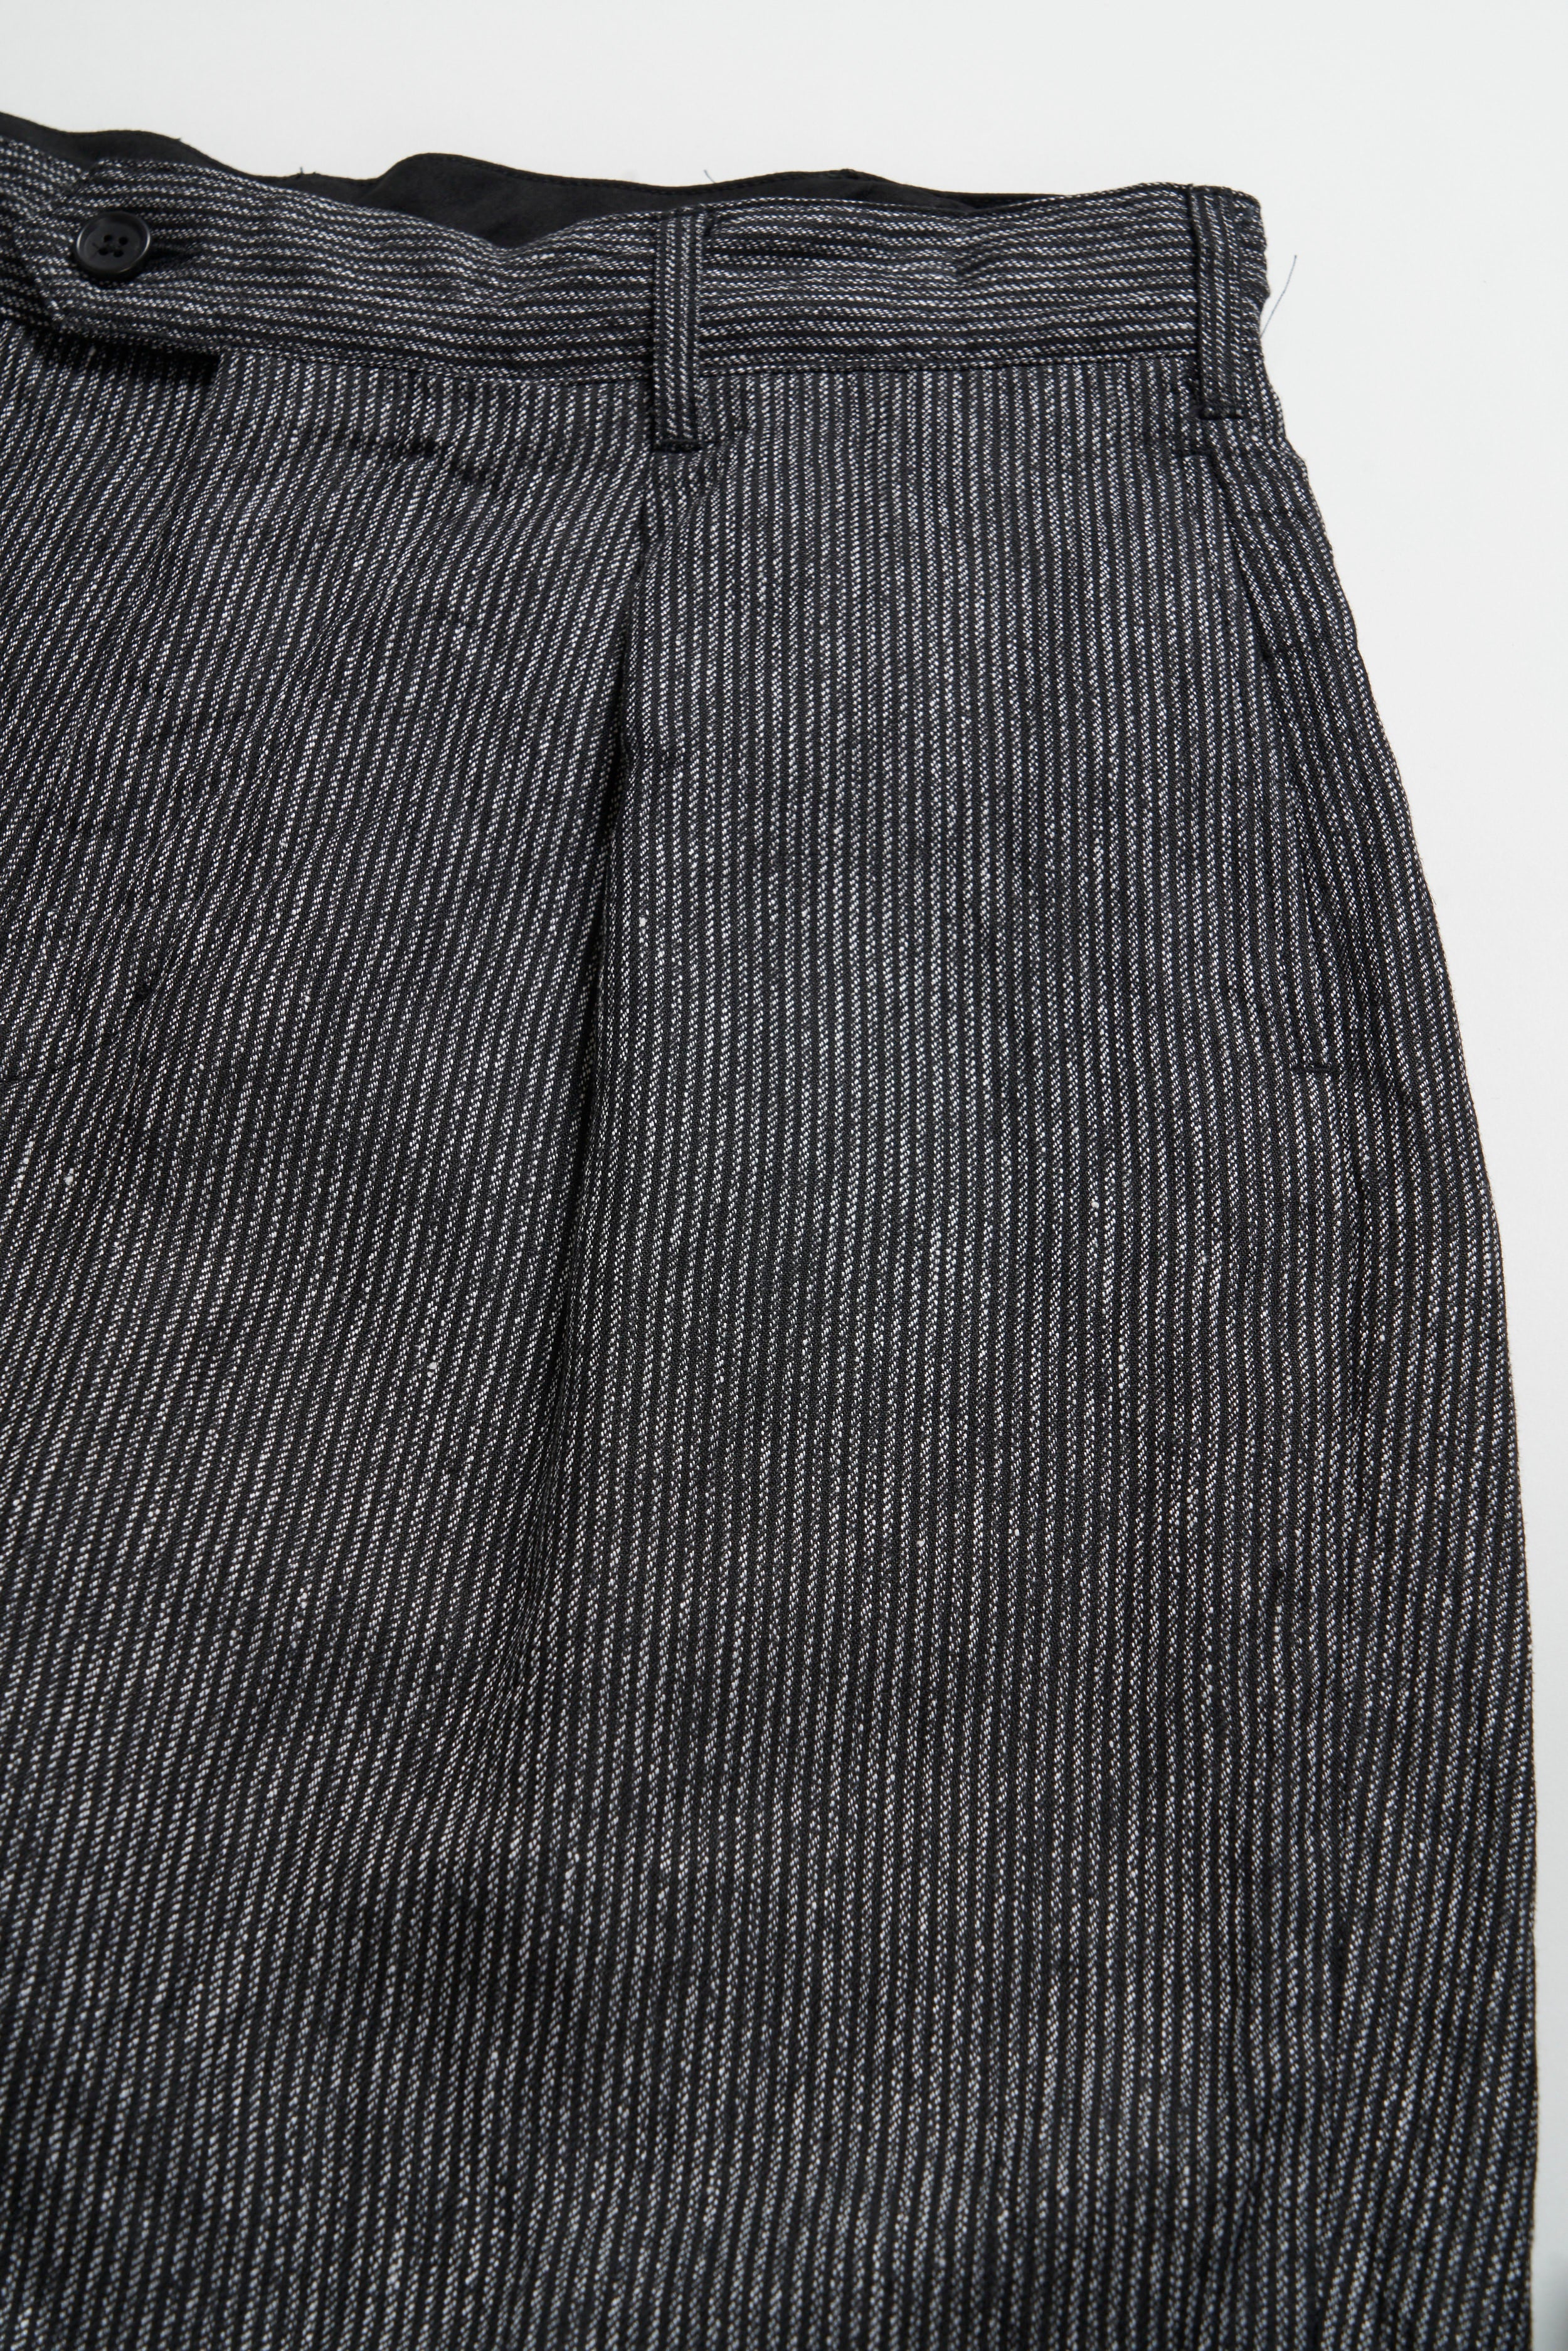 Carlyle Pant - Black / Grey Linen Stripe